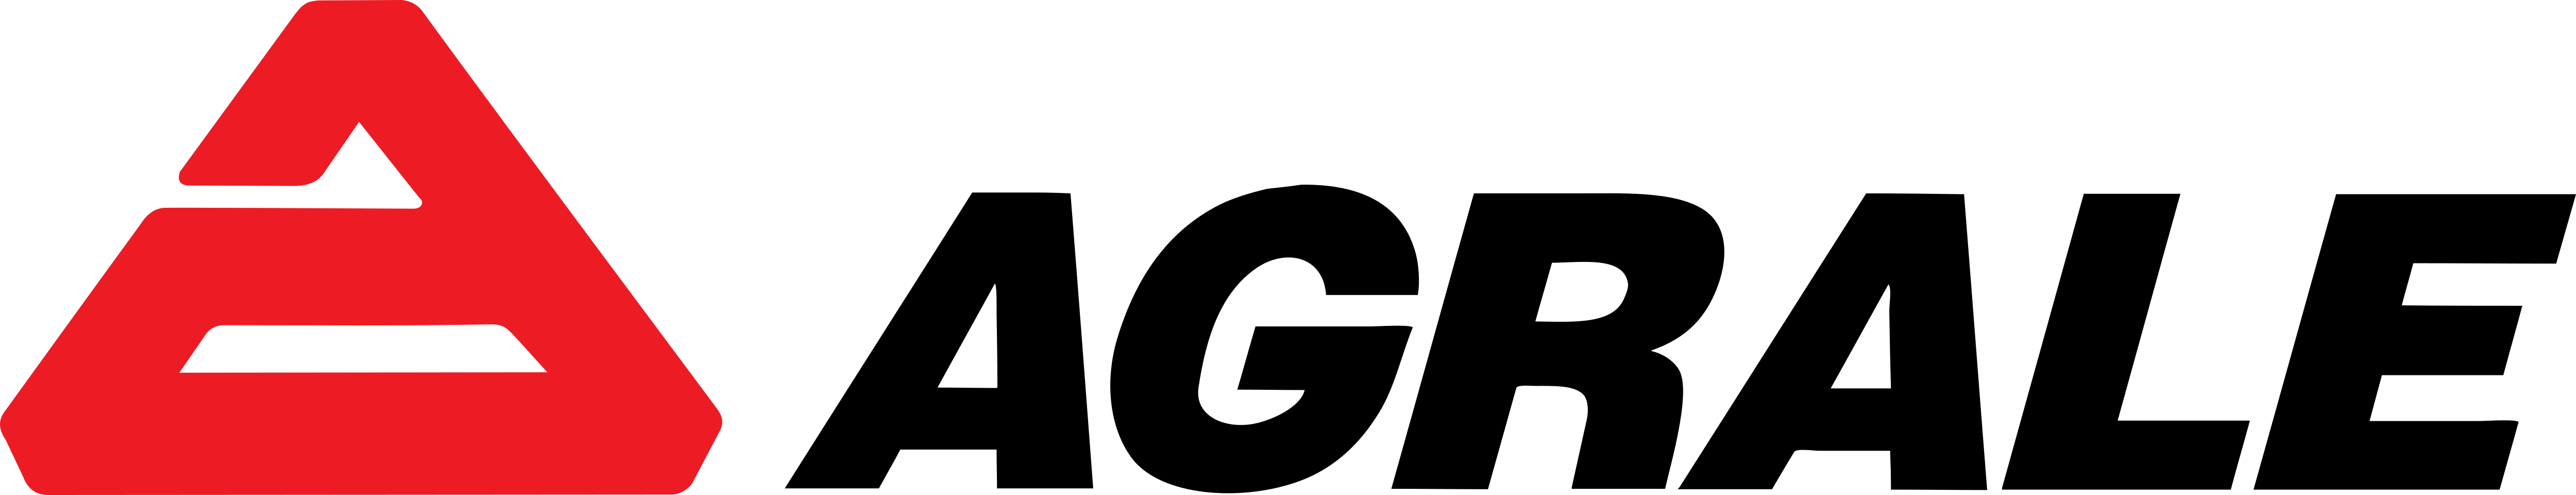 Agrale_Logo